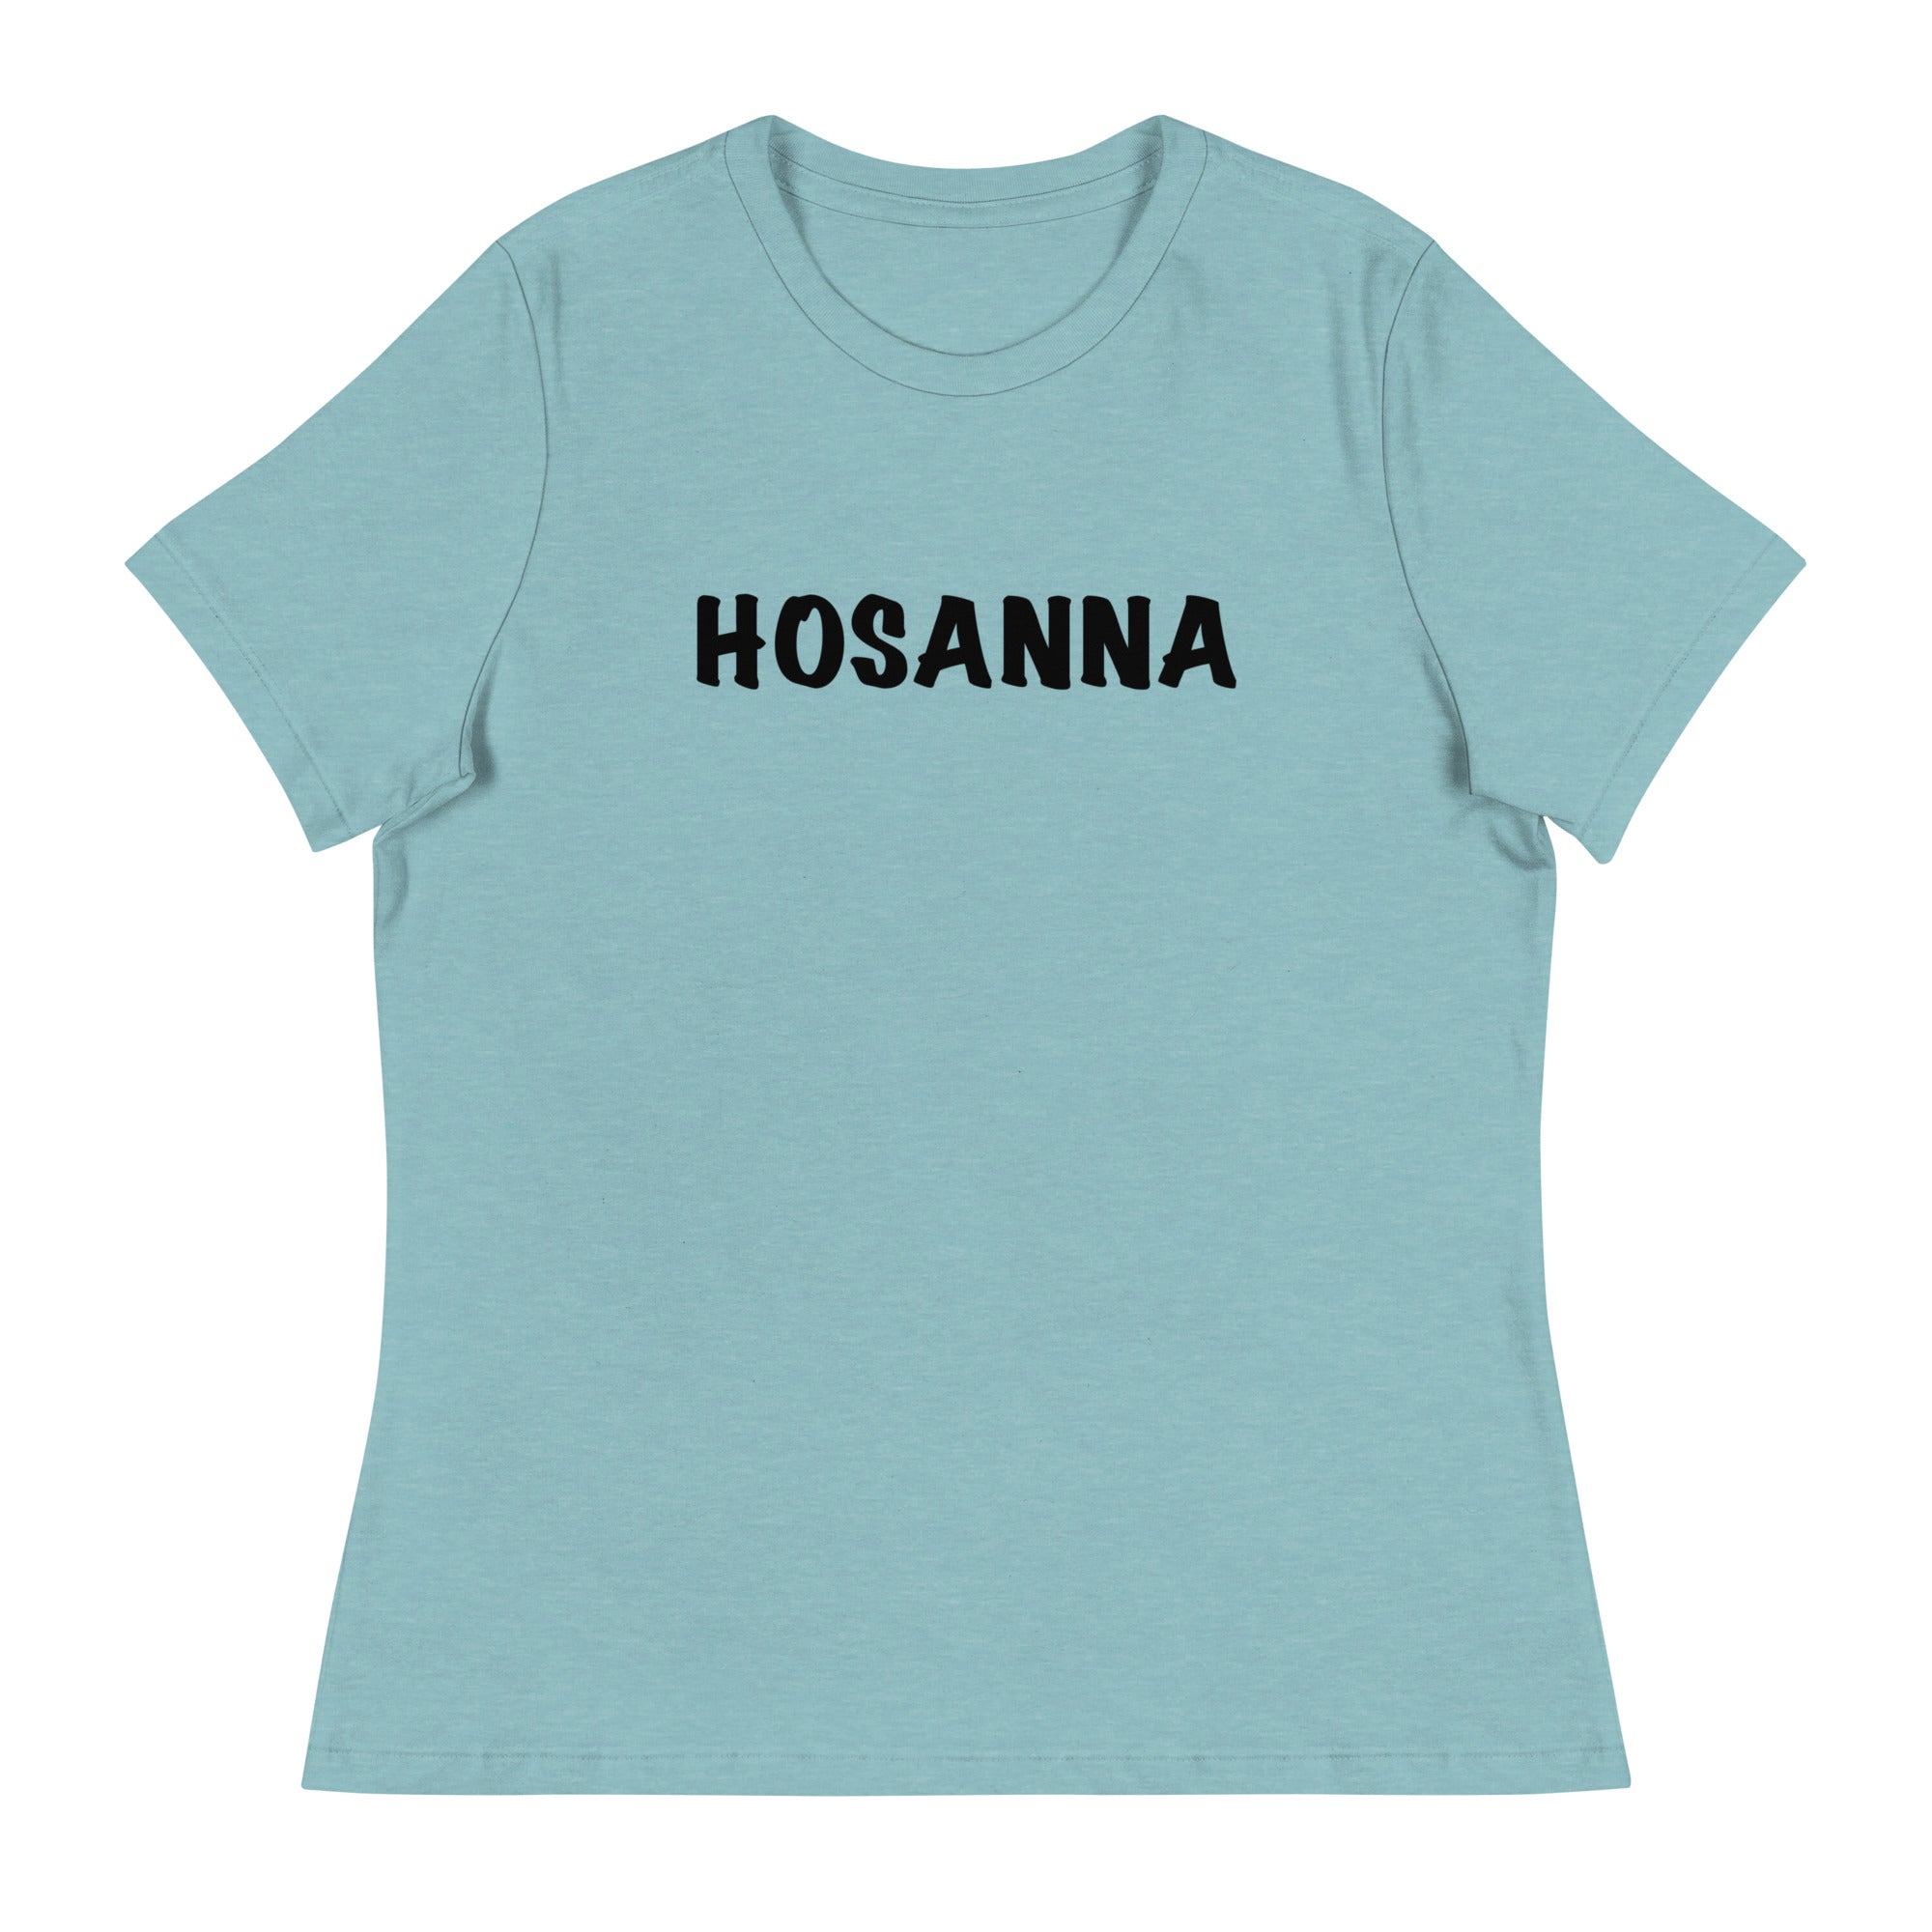 Thriving Faith Women's Relaxed T-Shirt (Hosanna)